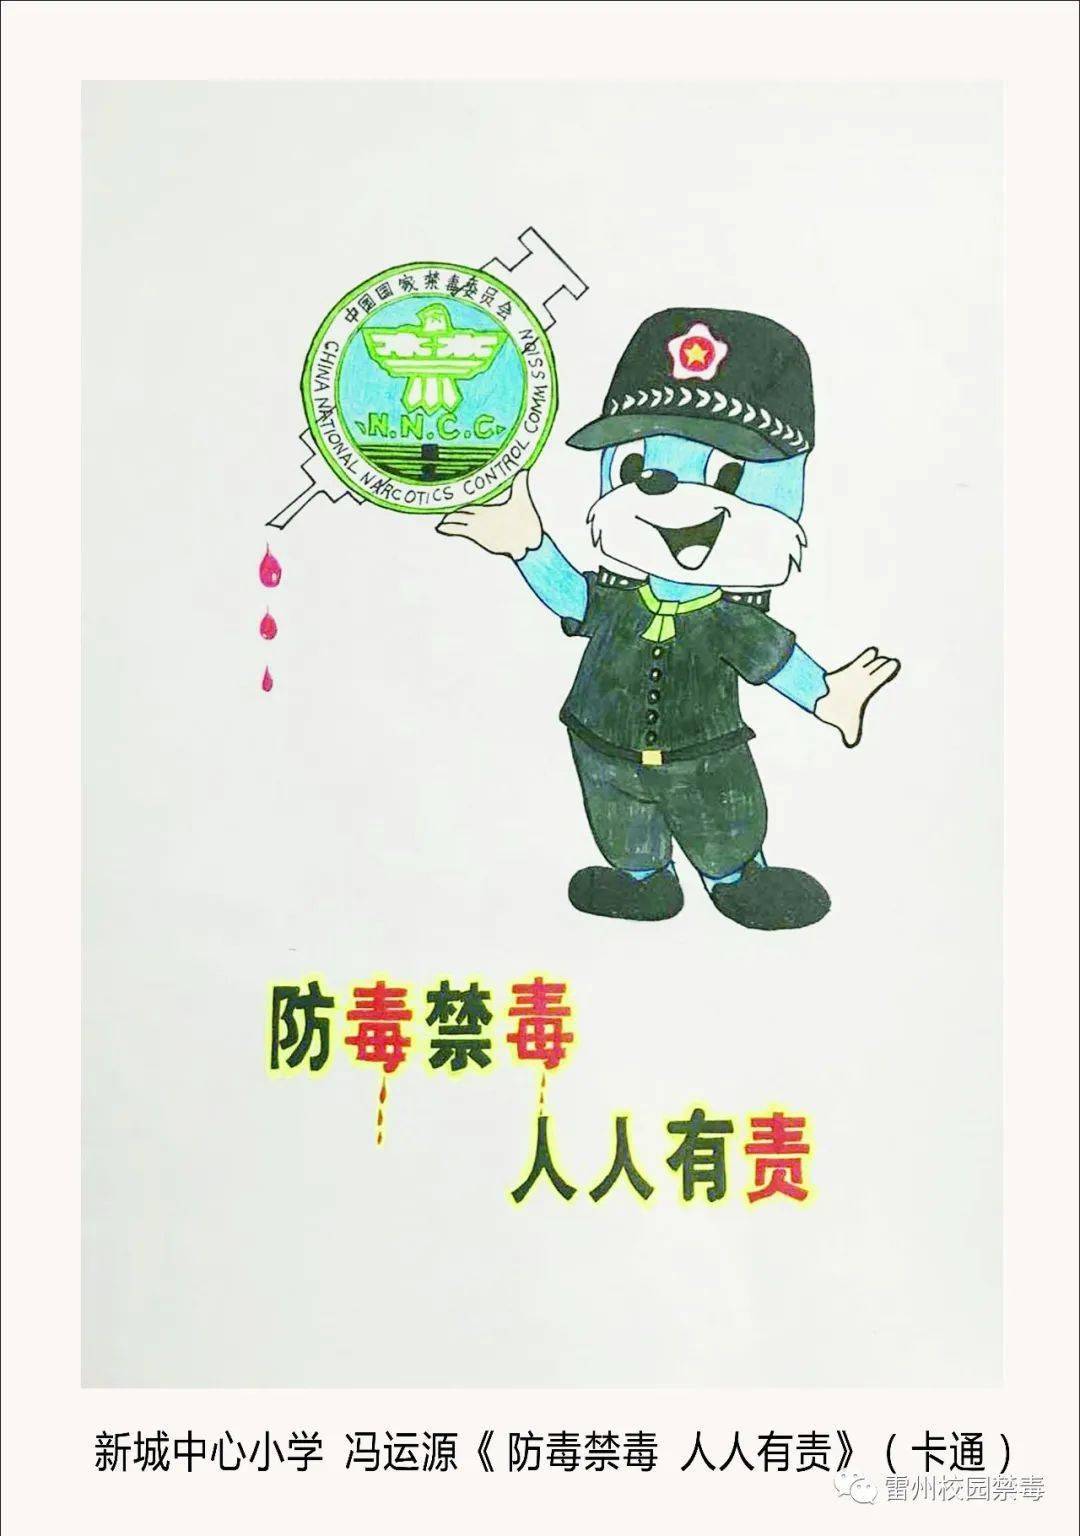 雷州市参加2020年湛江市中小学禁毒卡通形象征集活动28人获奖